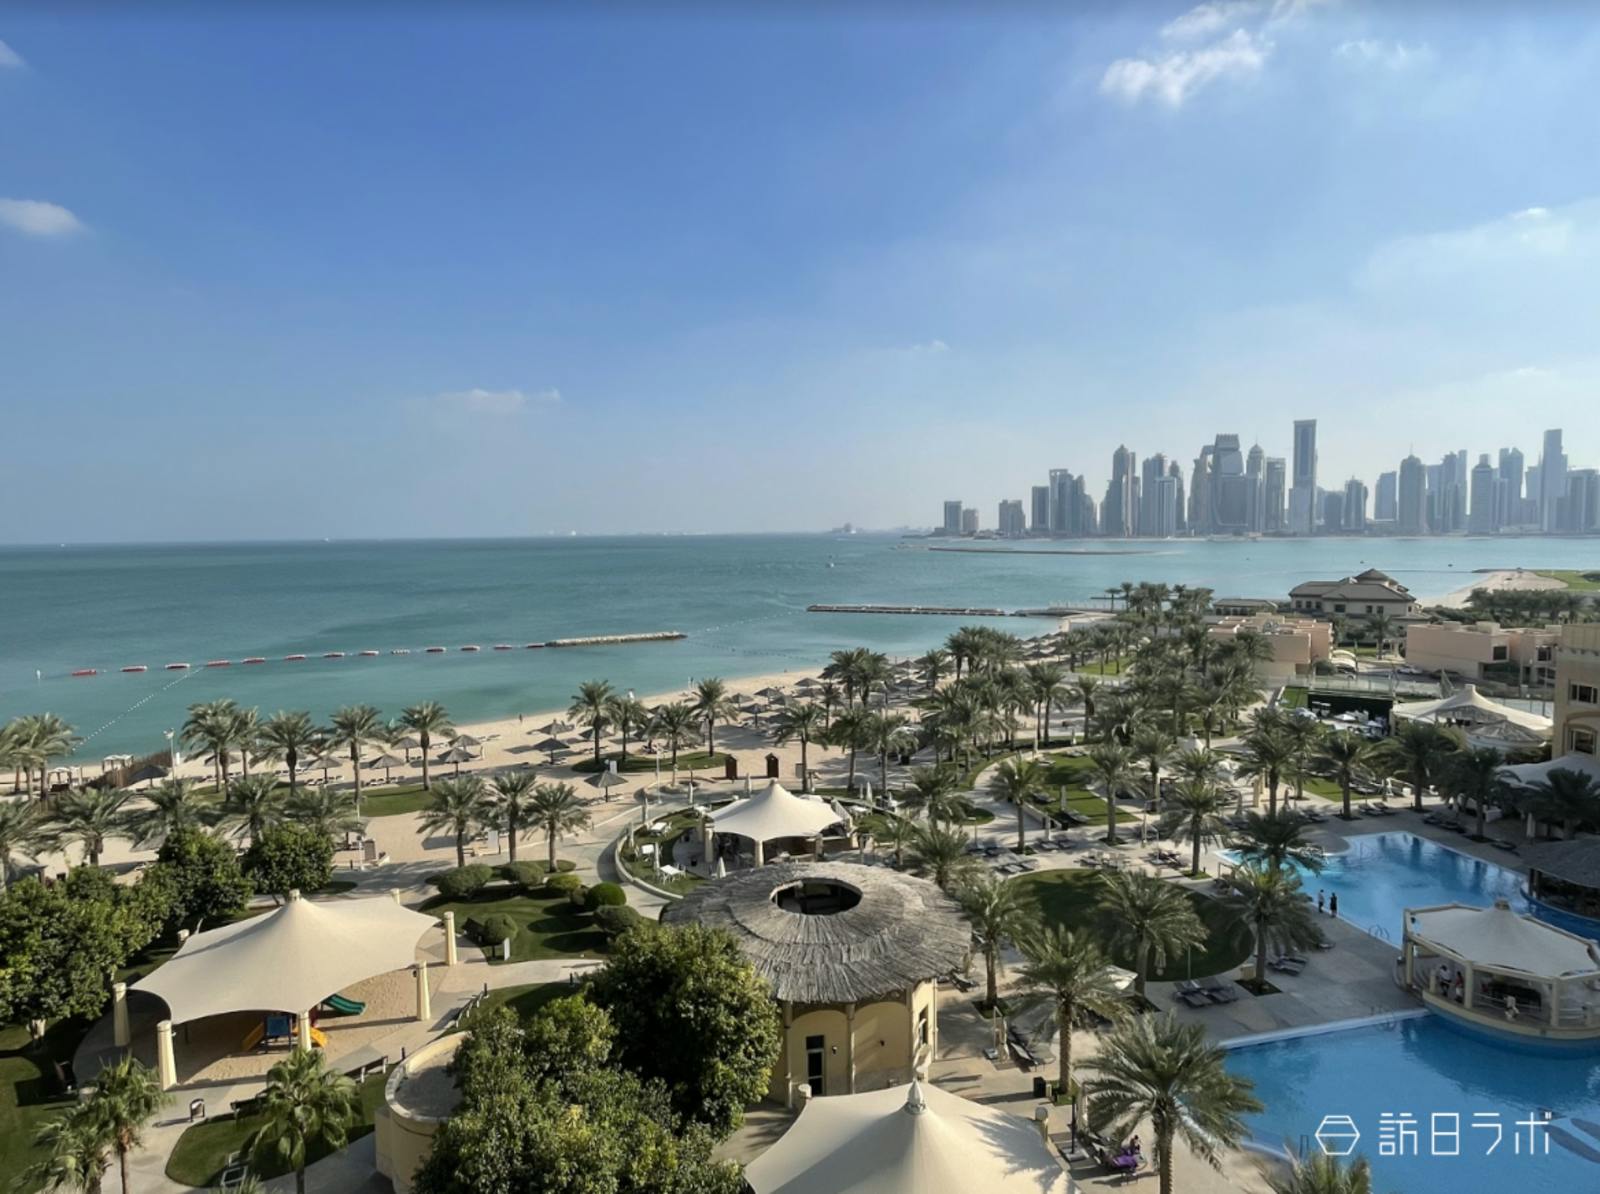 ▲Intercontinental Doha Beach & Spaのエグゼクティブスイートルームからの眺望。ドーハでNo.1の面積を誇るプライベートビーチです。